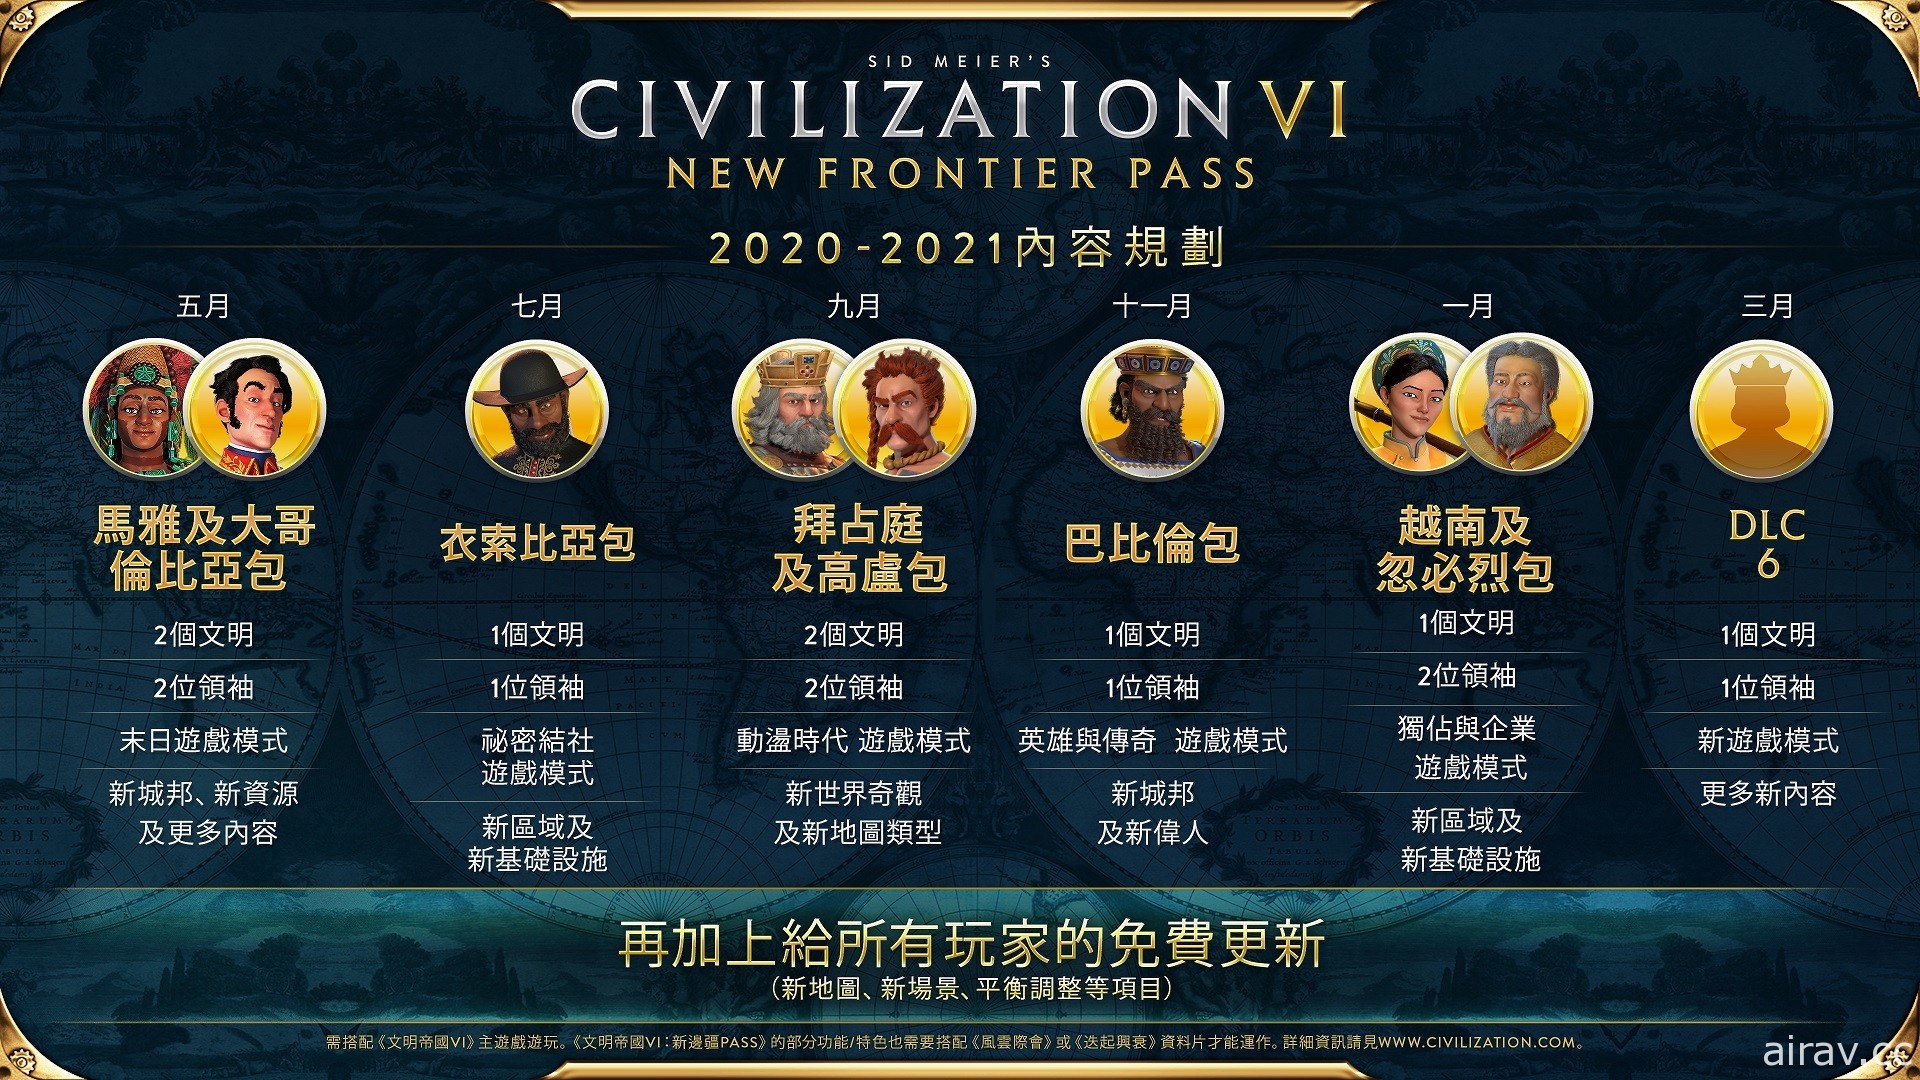 《文明帝国 6》新边疆季票第五款 DLC“越南及忽必烈包”上线 新模式提升经济玩法策略